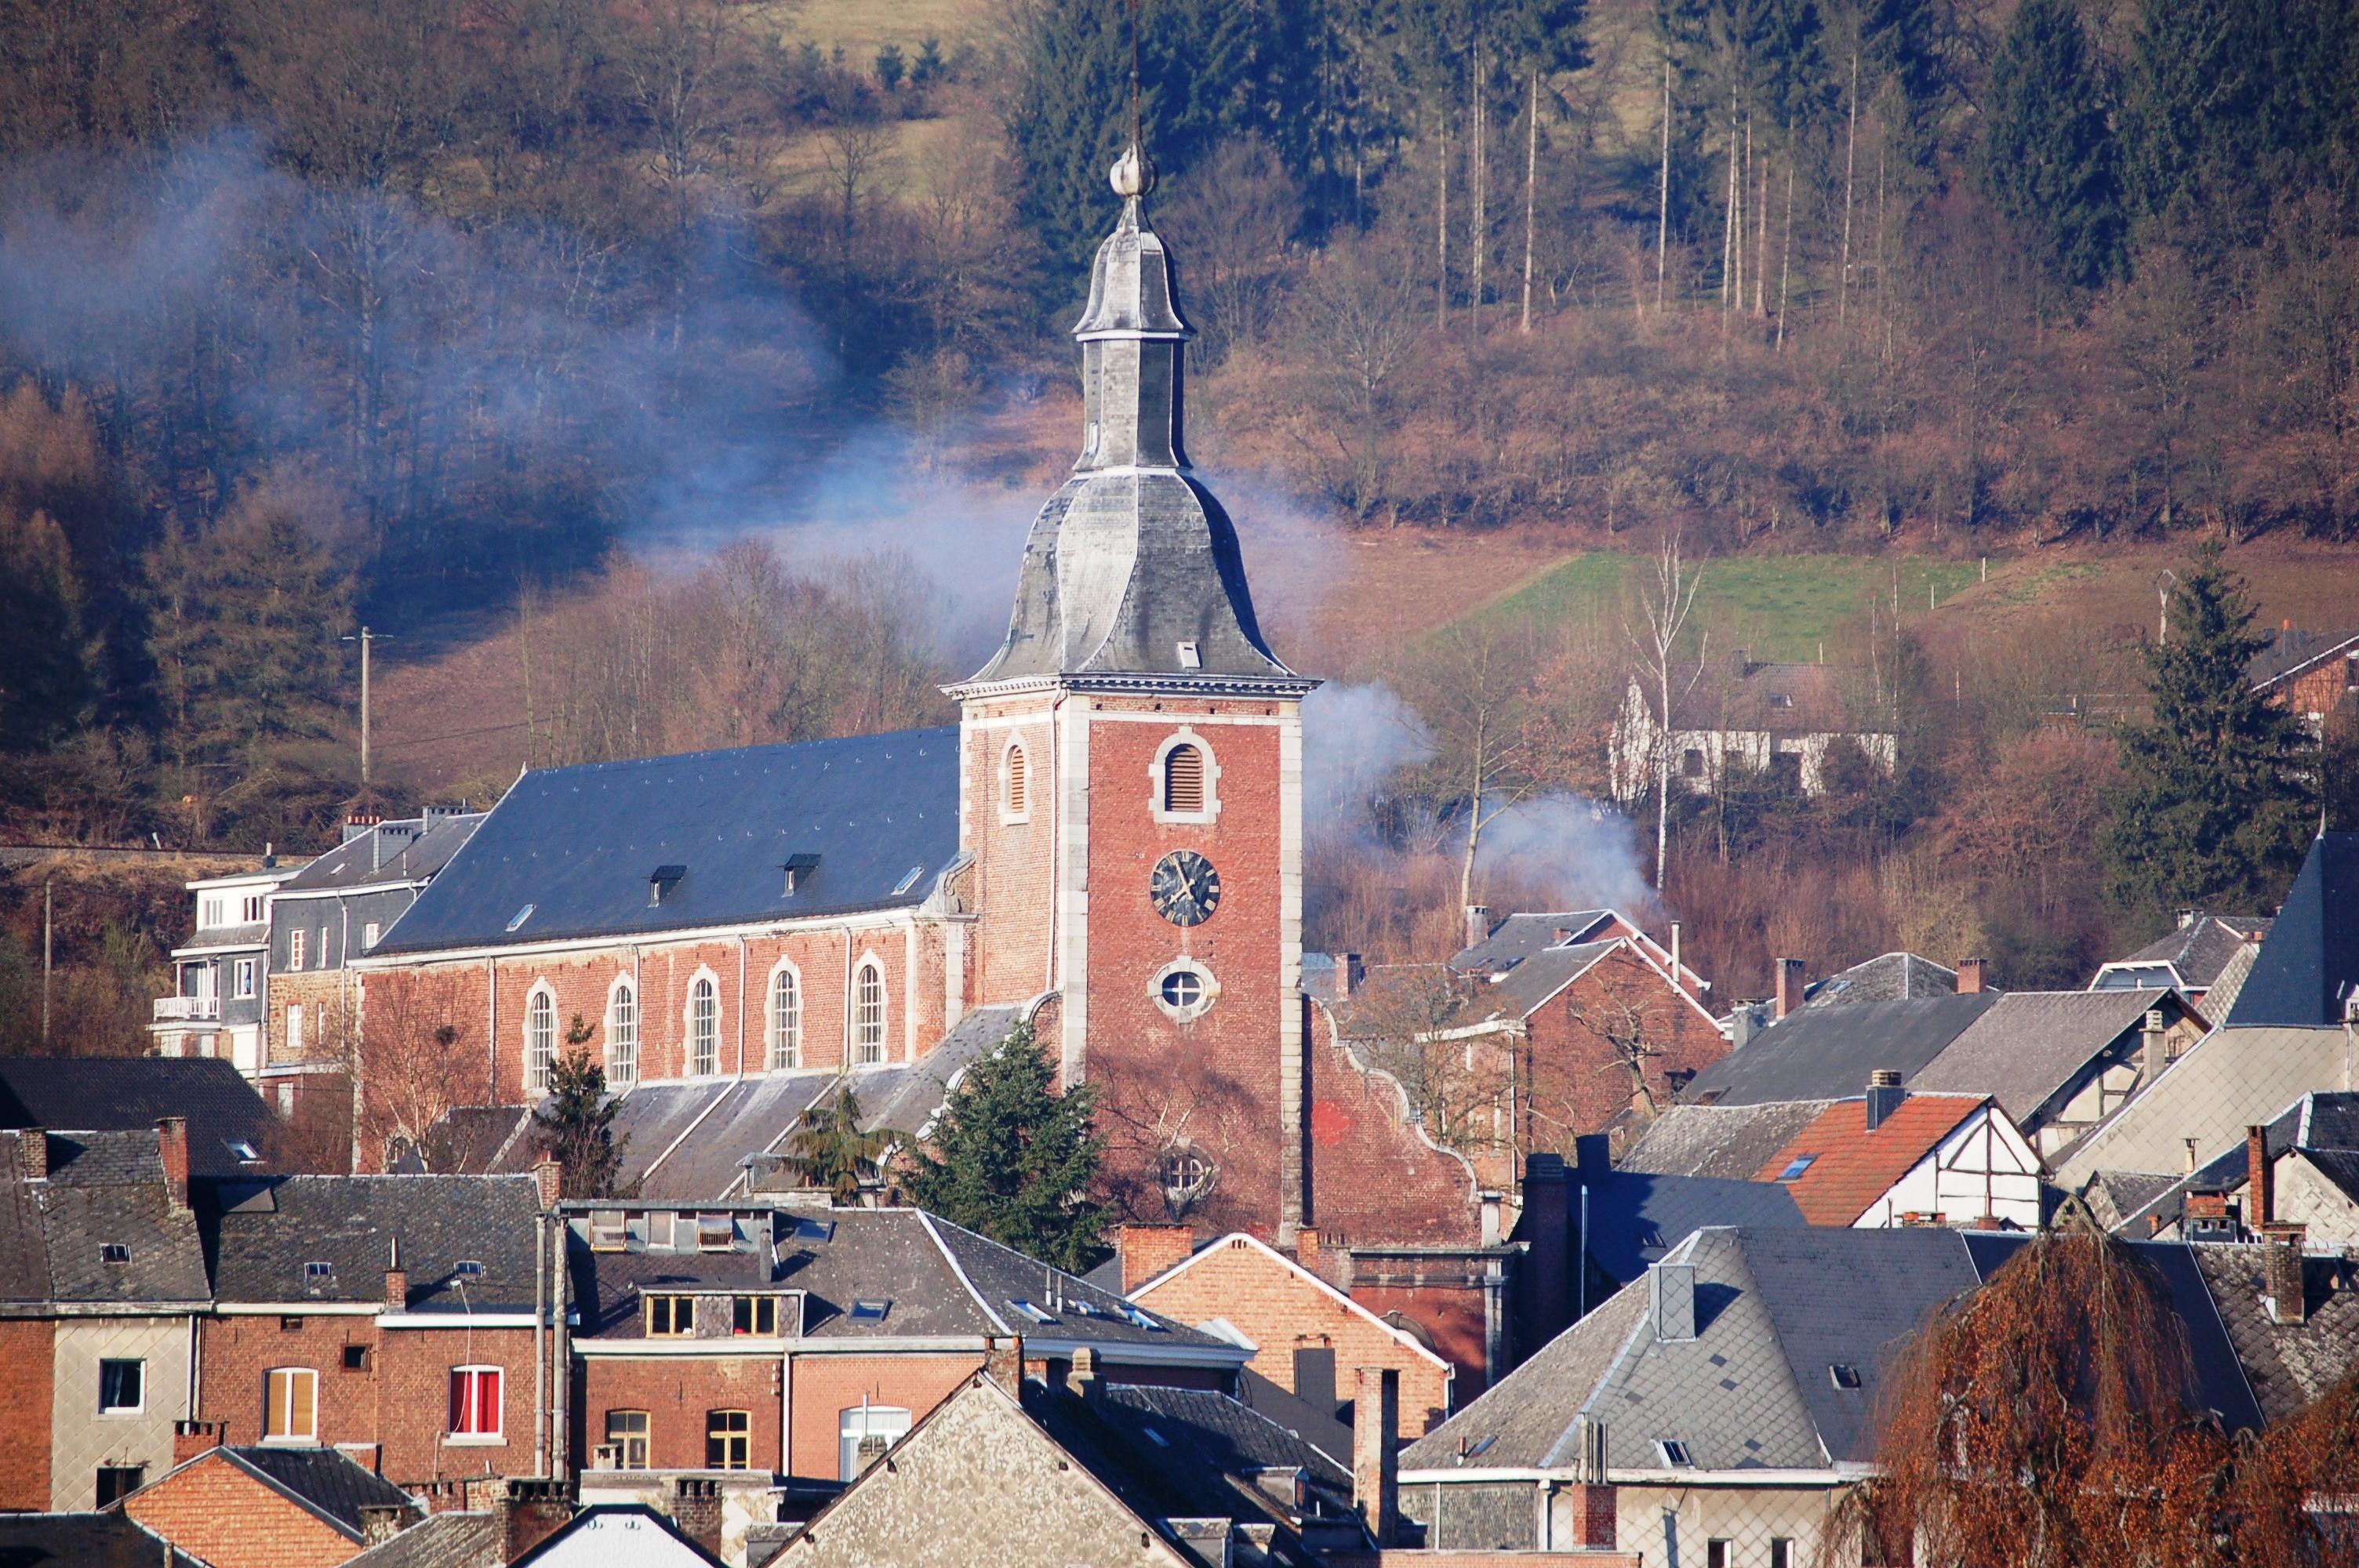 Vue des toits en ardoises du centre historique de Stavelot et clocher de l’église.